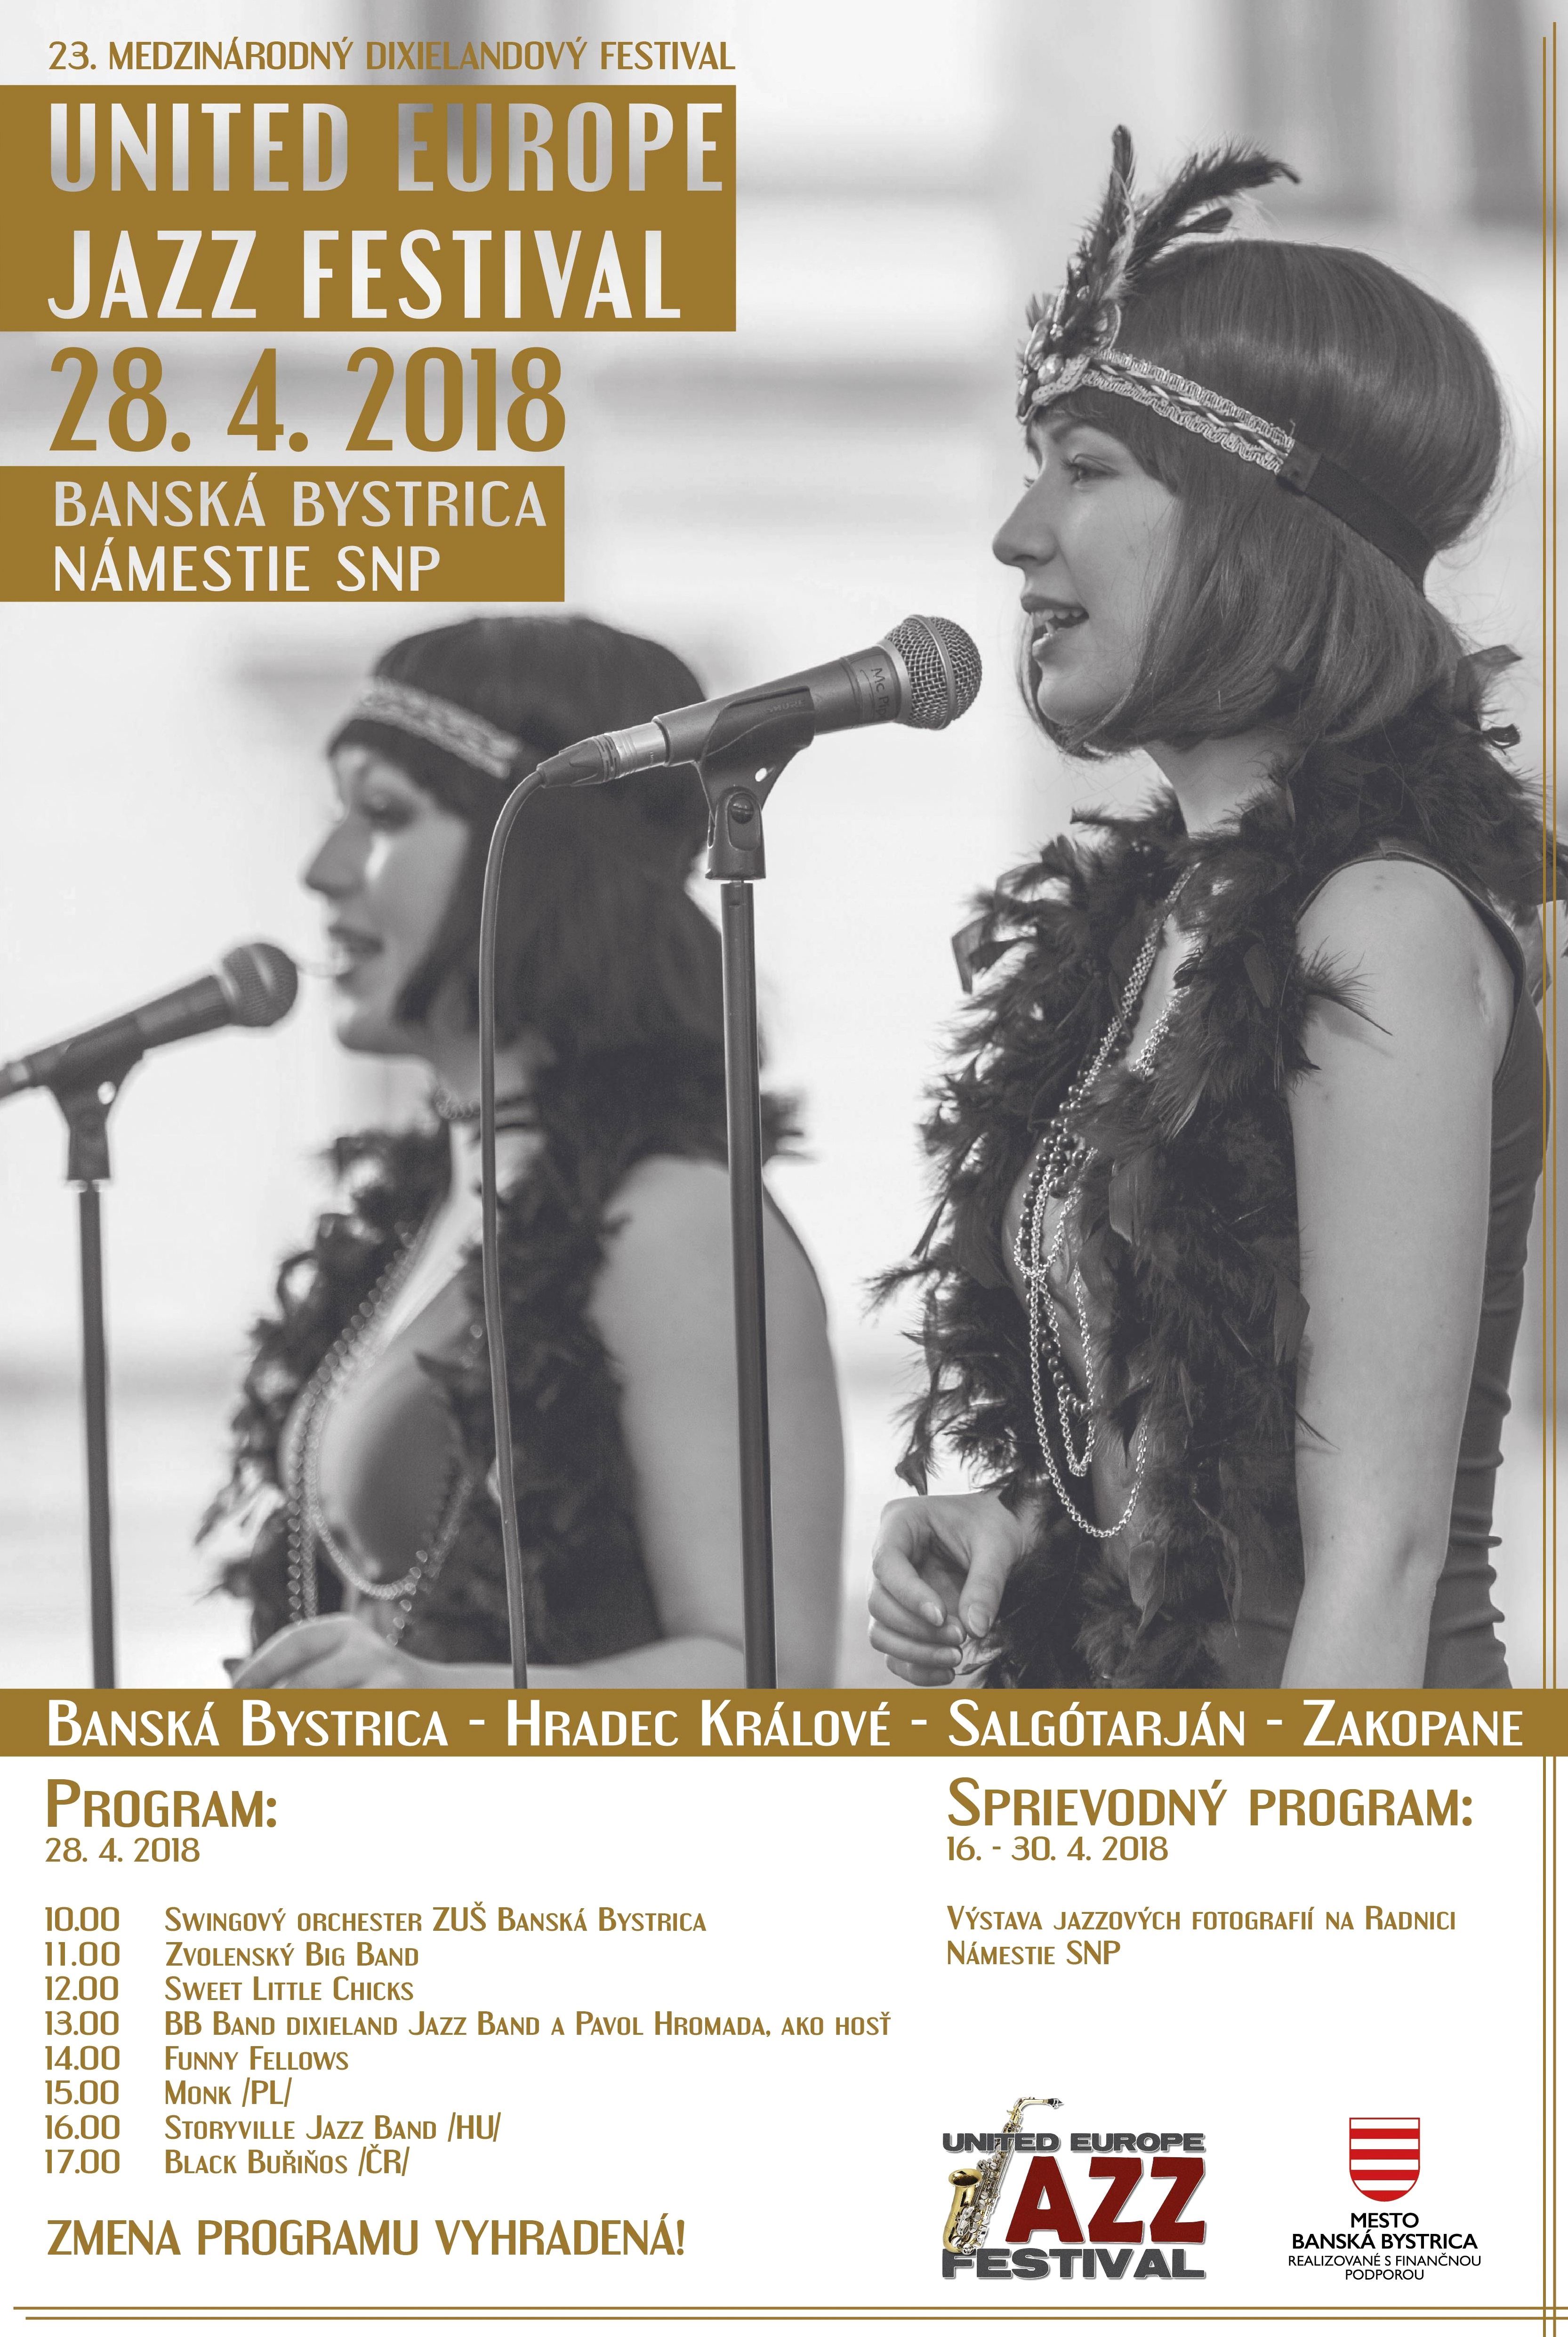 United Europe Jazz festival B.Bystrica 2018 - 23. Medzinrodn dixielandov festival 